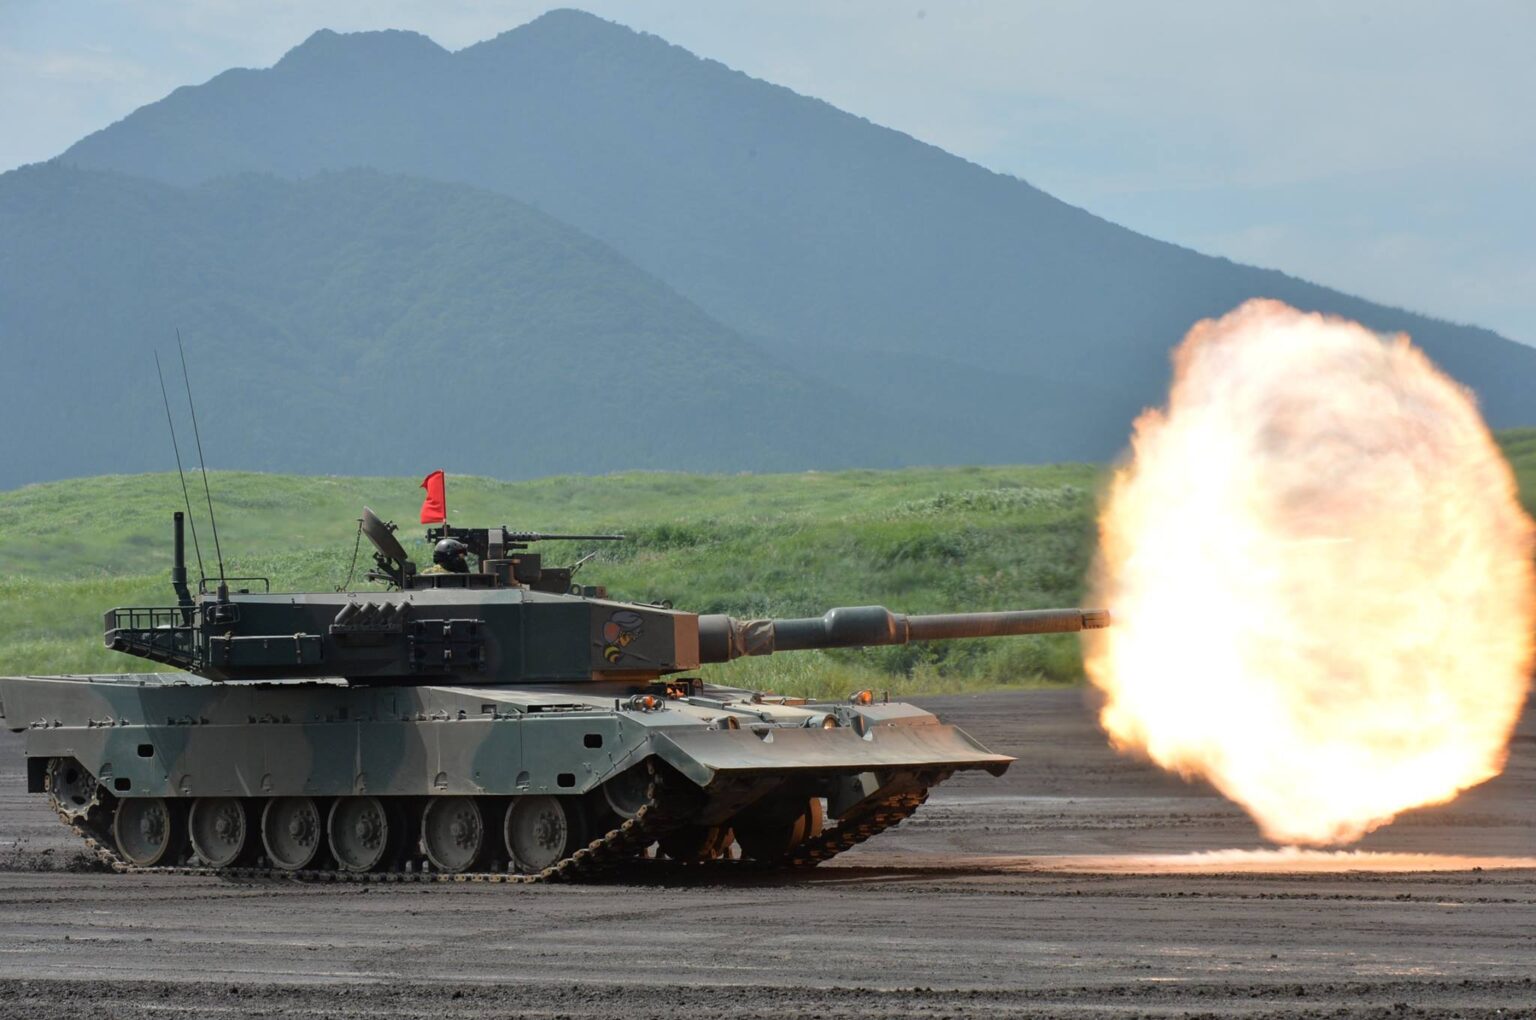 a Japanese tank firing a shot